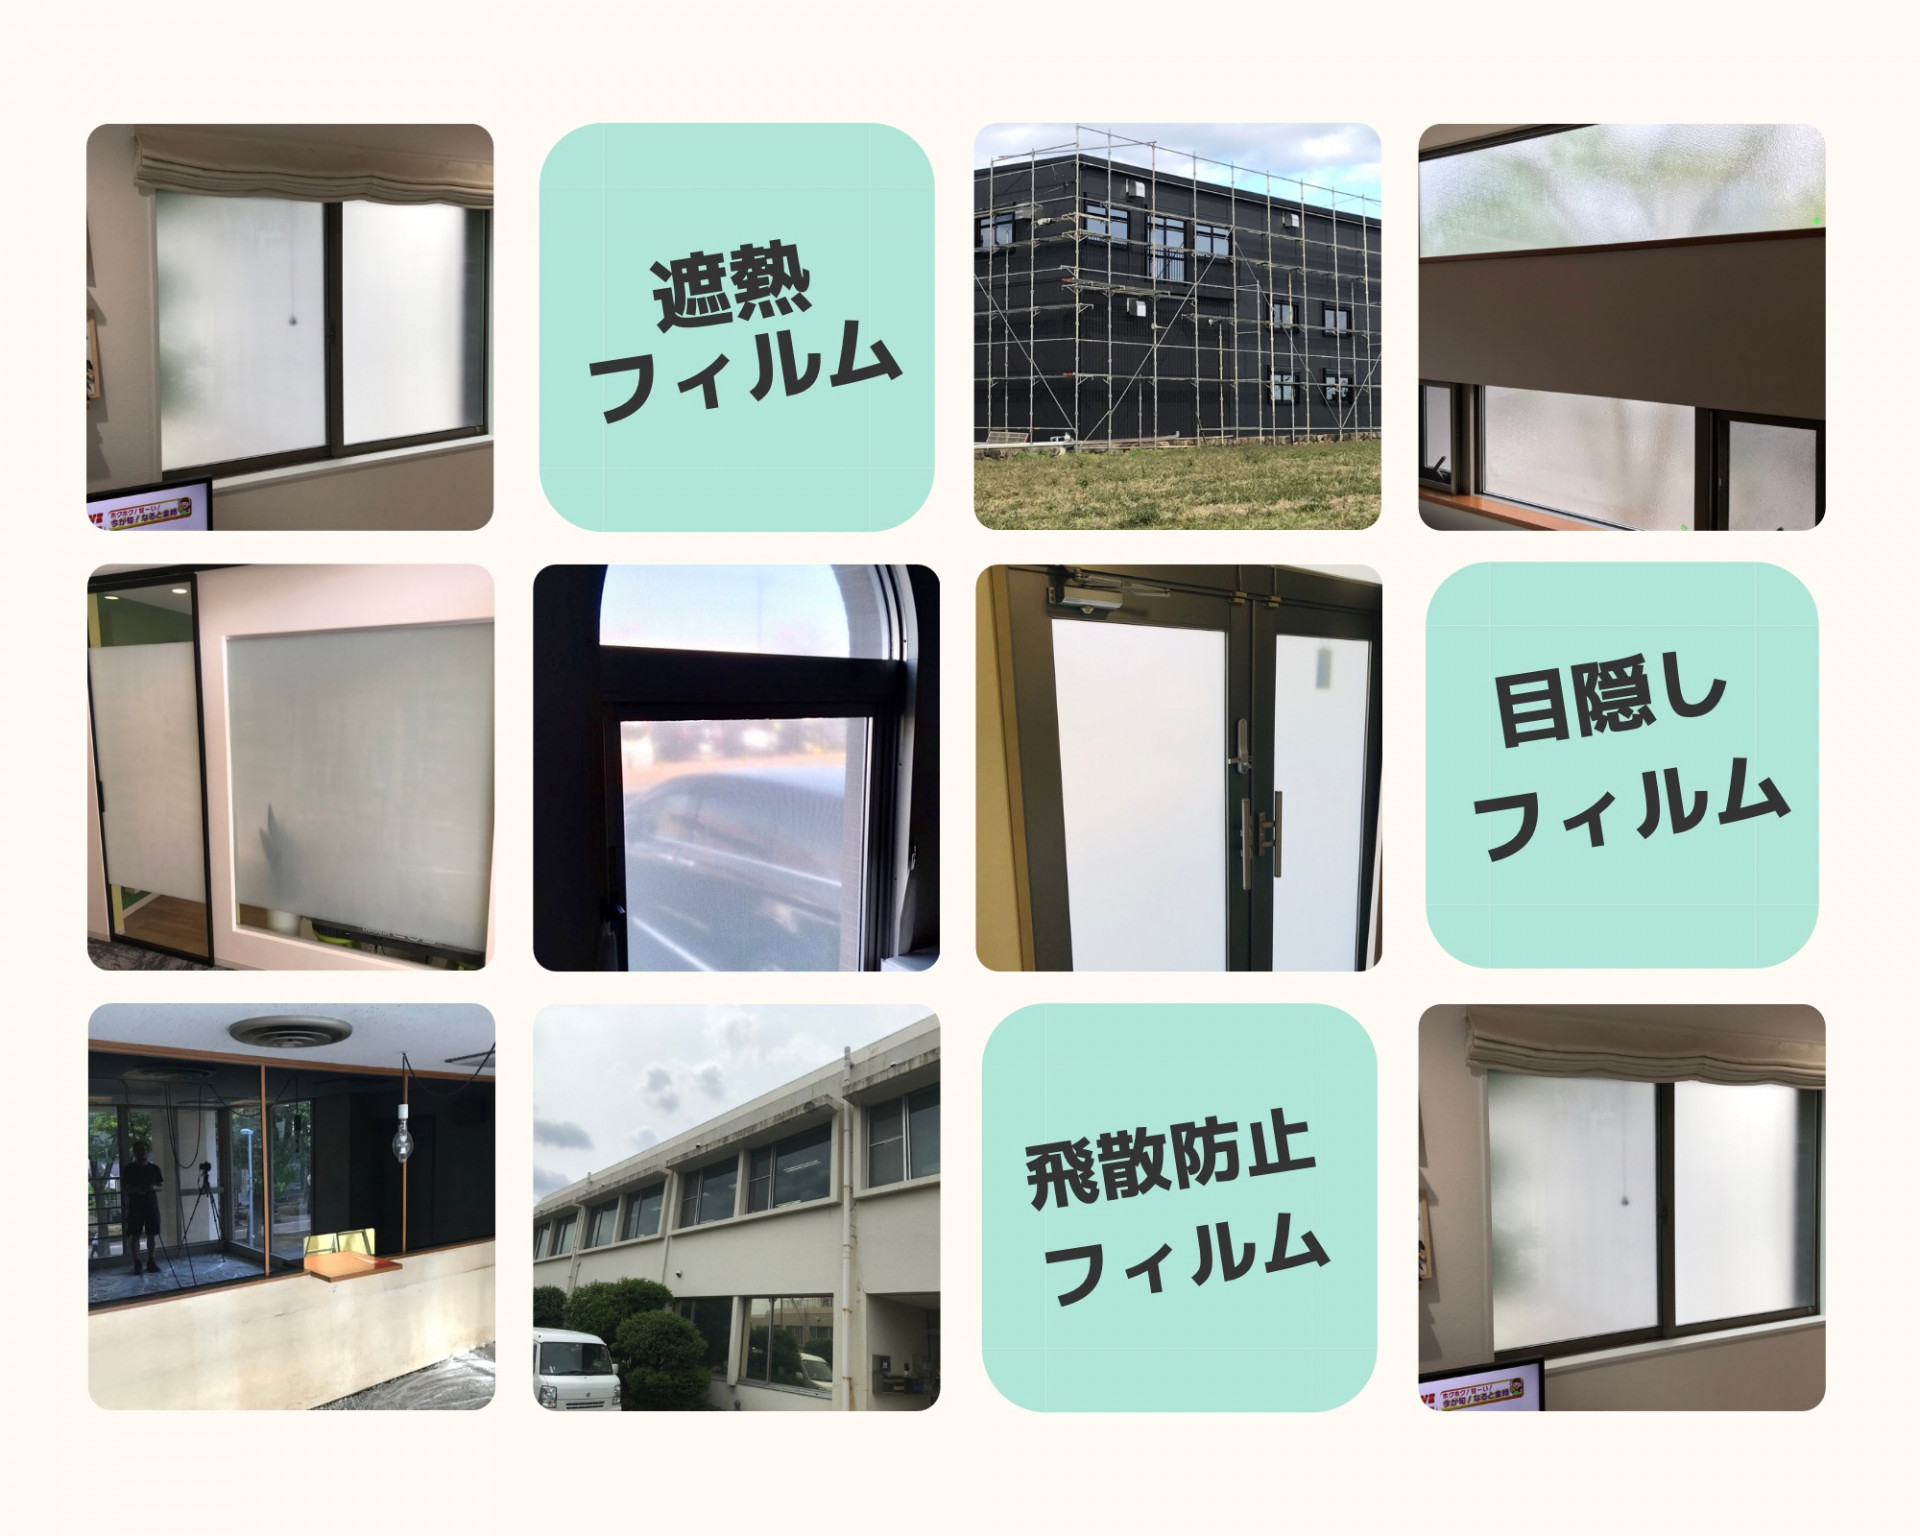 埼玉県羽生市で窓ガラスフィルム施工をお考えの方